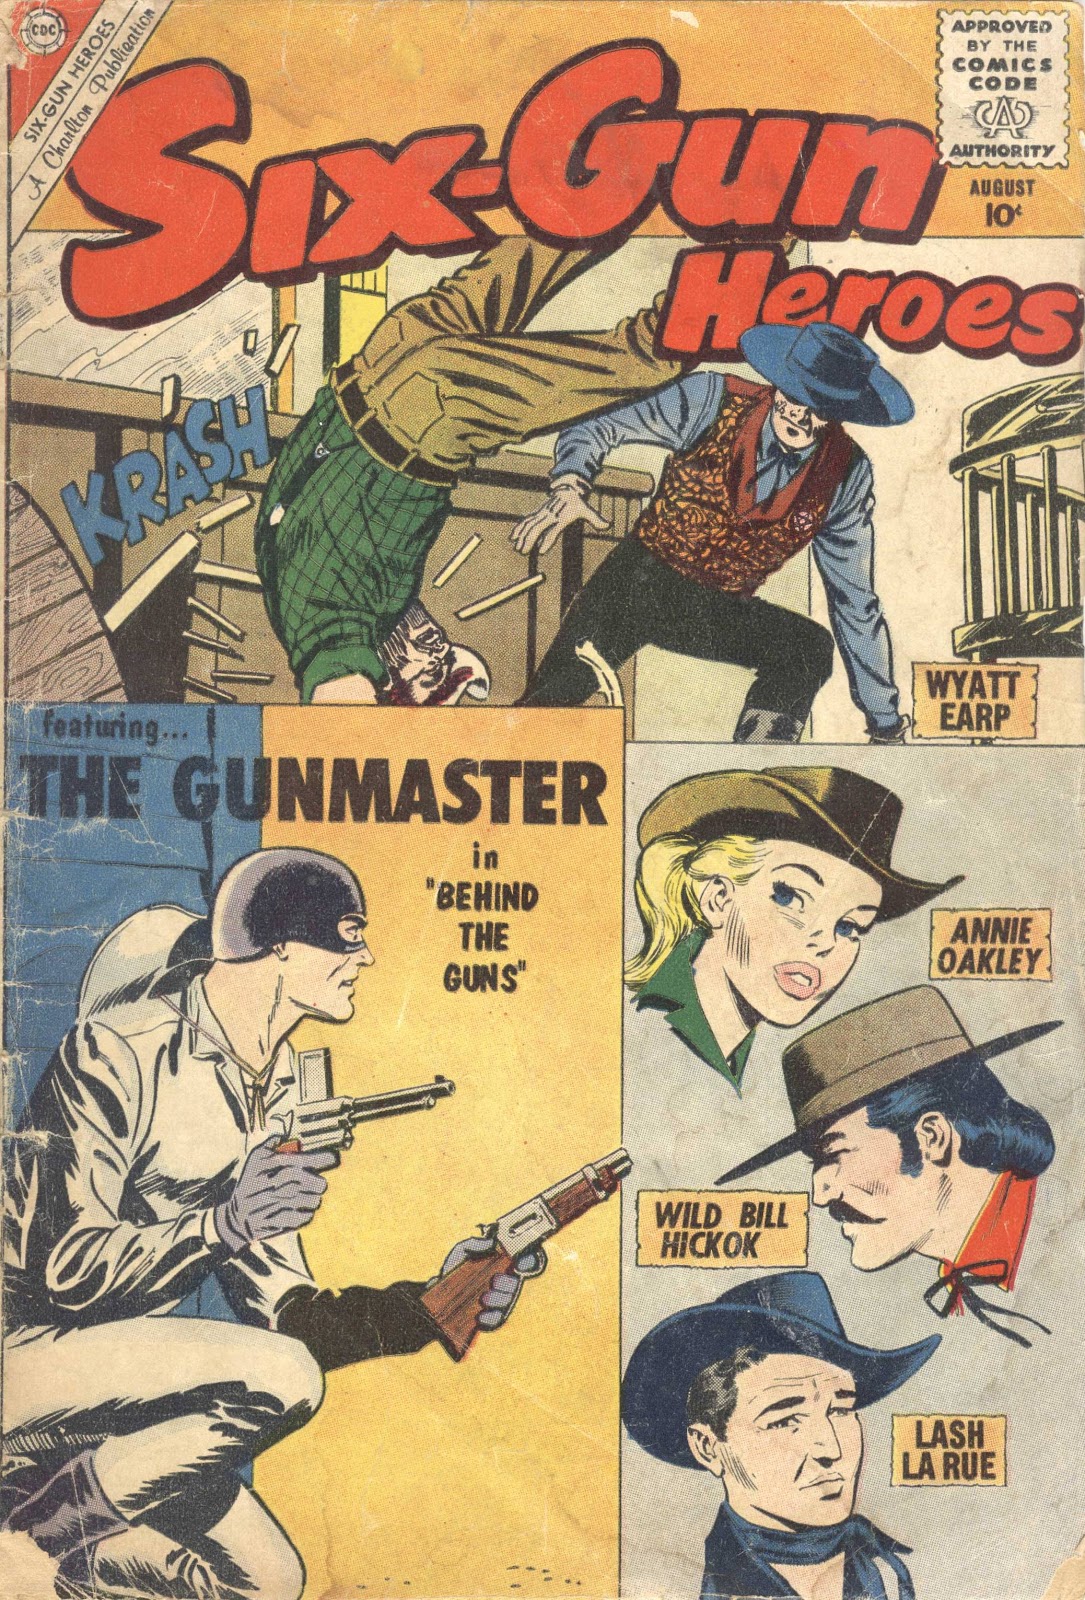 Six-Gun Heroes 58 Page 1